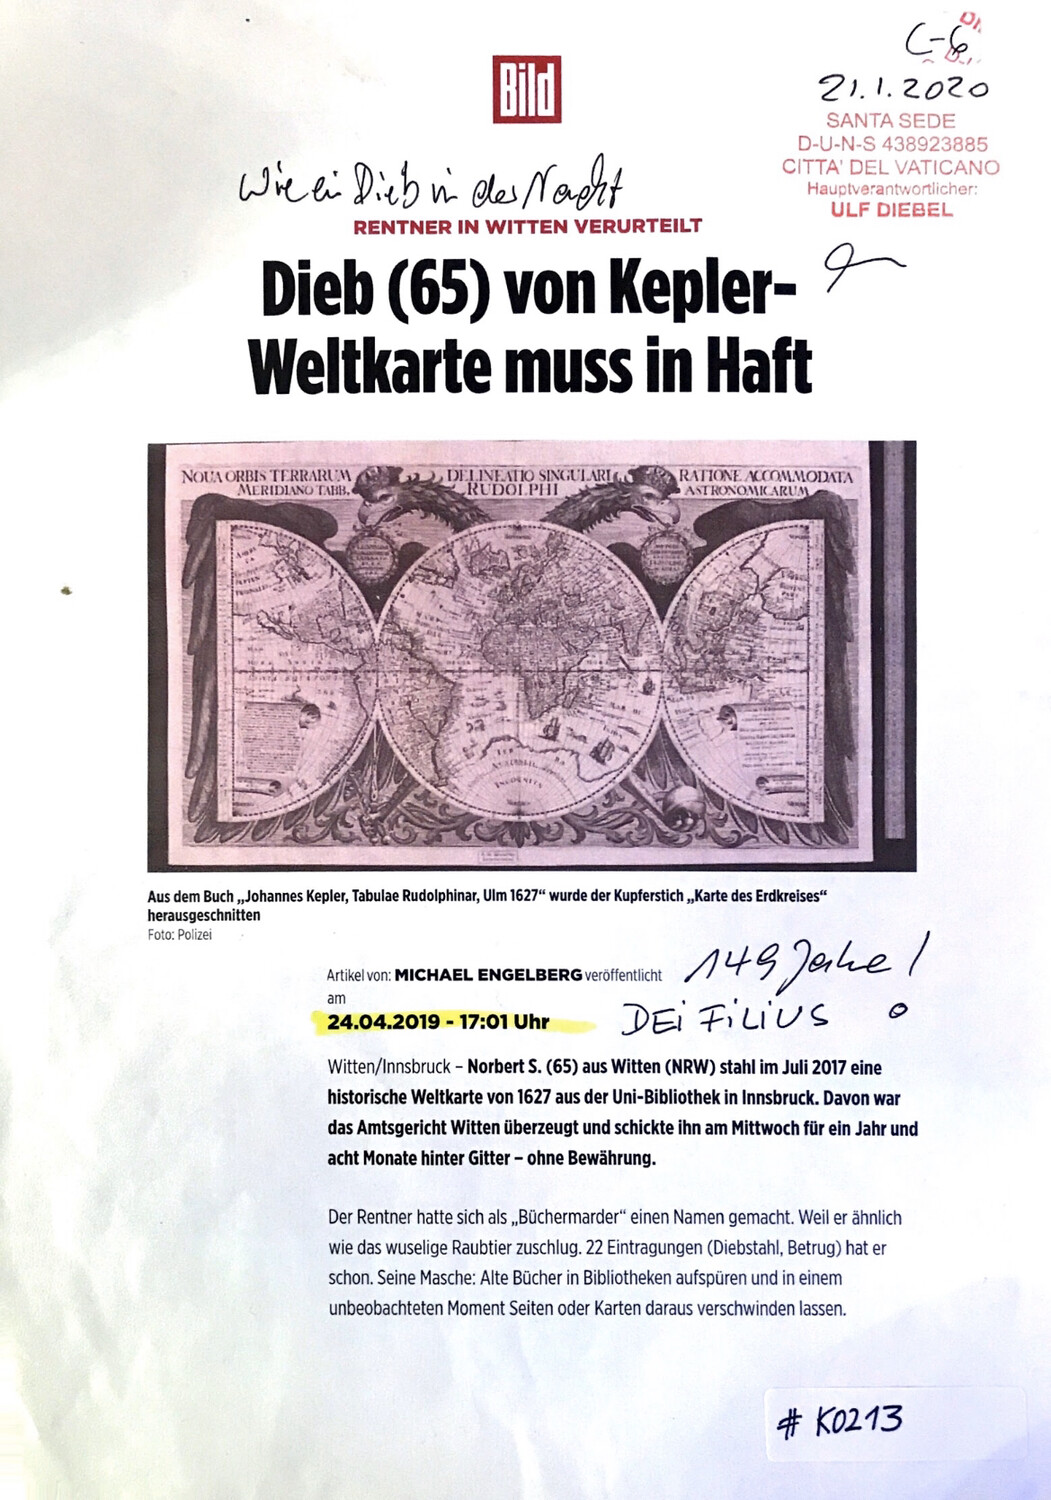 #K0213 l Bild - Rentner in Witten verurteilt l Dieb (65) von Kepler-Weltkarte muss in Haft